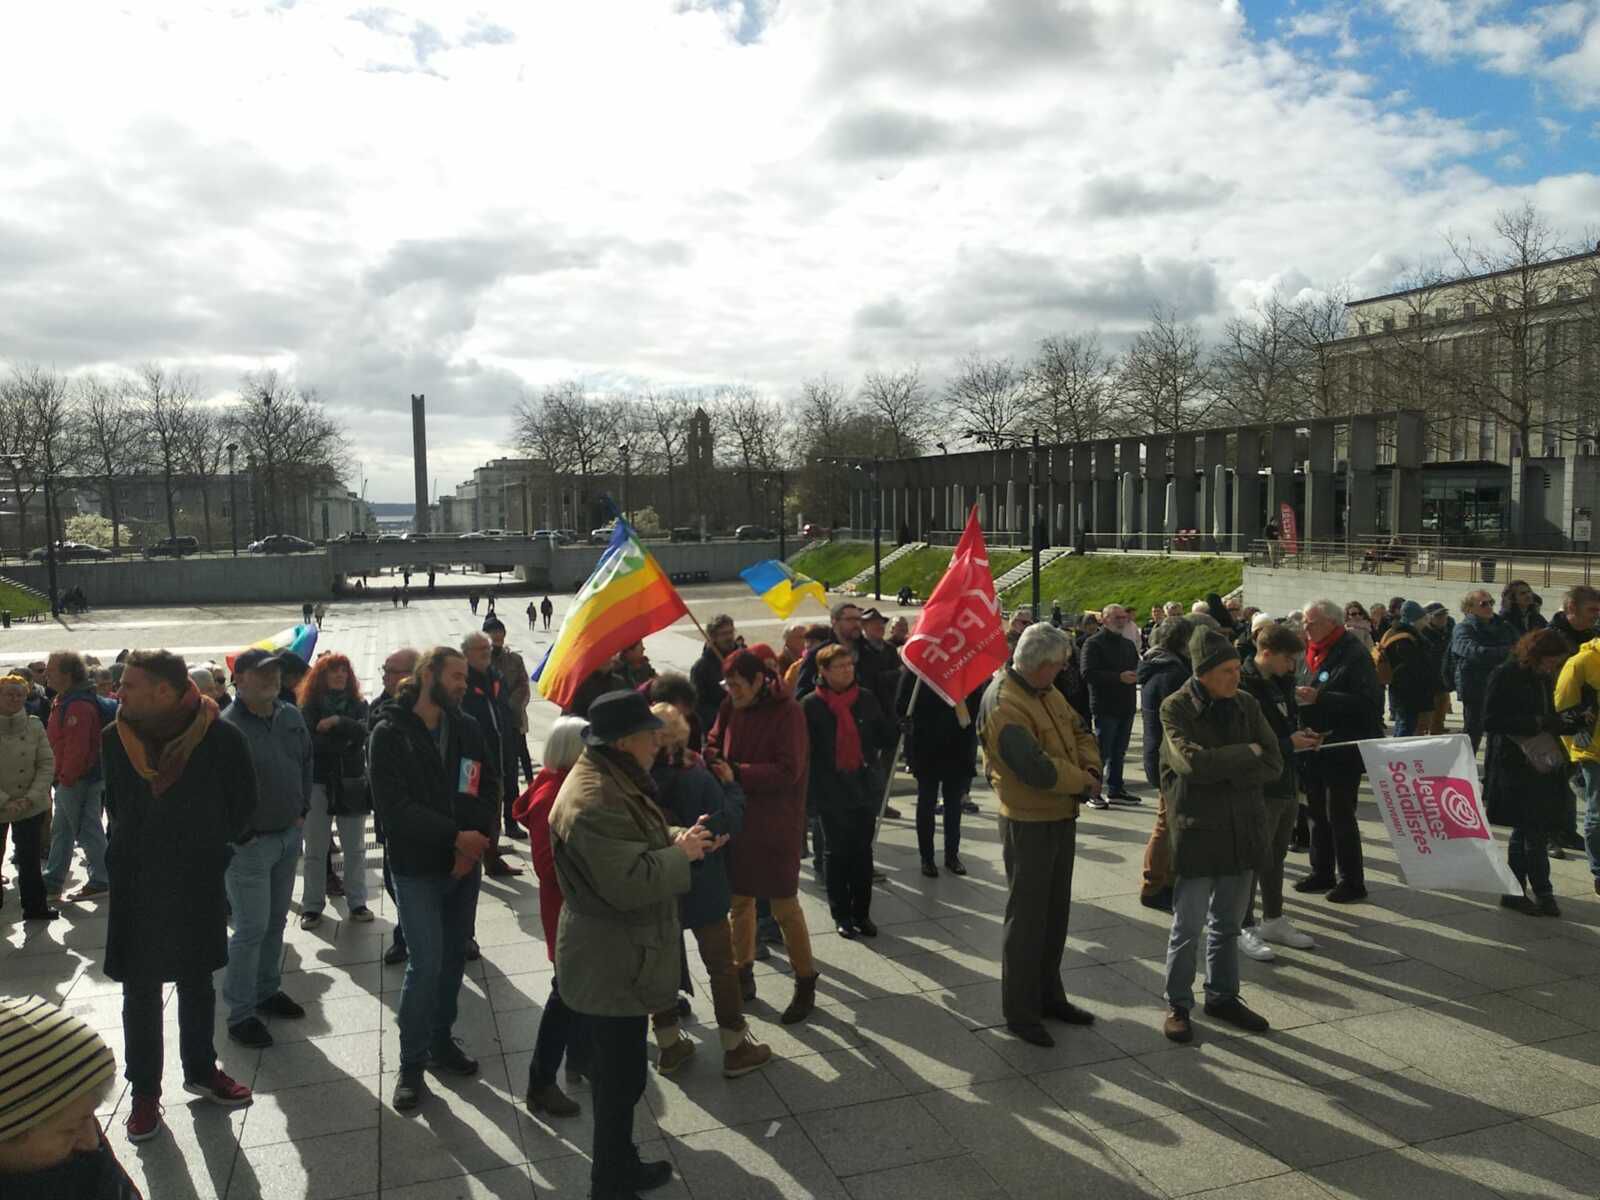 25 février 2023: 200 personnes manifestent place de la Liberté à Brest pour la Paix en Ukraine, en solidarité avec le peuple ukrainien victime depuis un an de l'agression et de la guerre barbare de Poutine